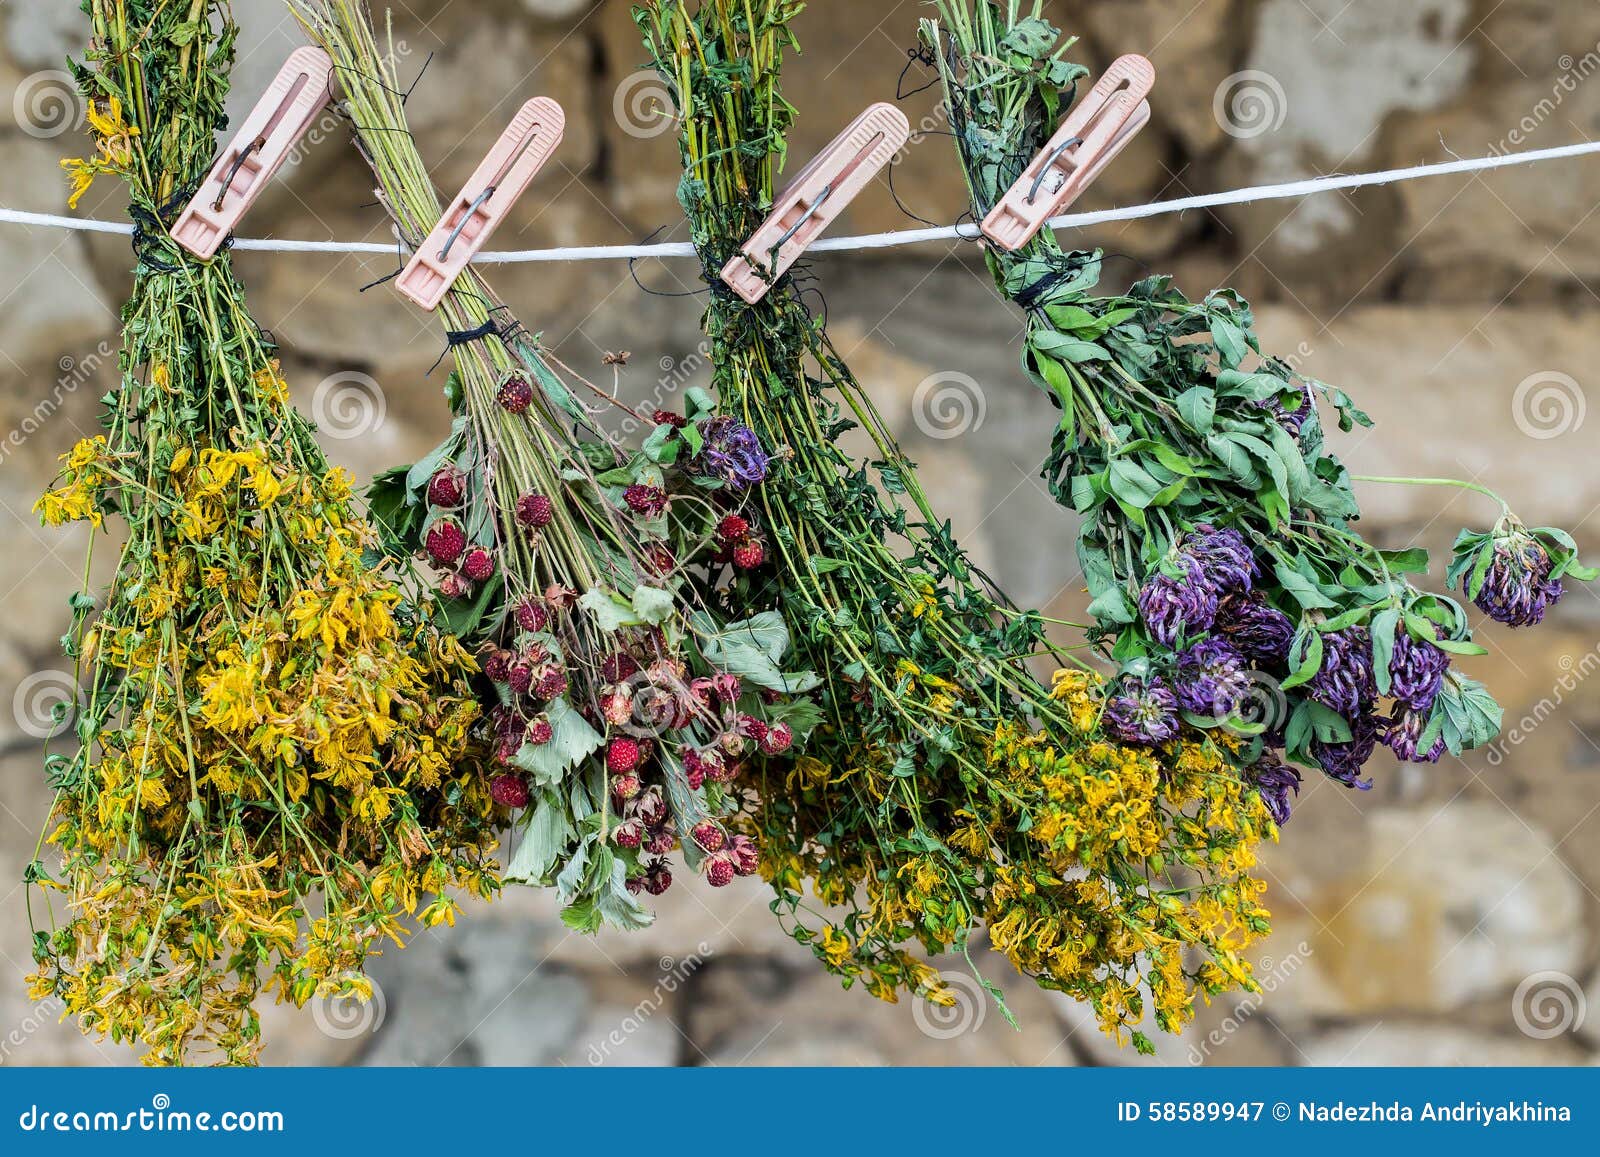 Цветки собранные вместе. Сушеные травы. Веники из лекарственных растений. Сушка трав. Высушенные лекарственные растения.